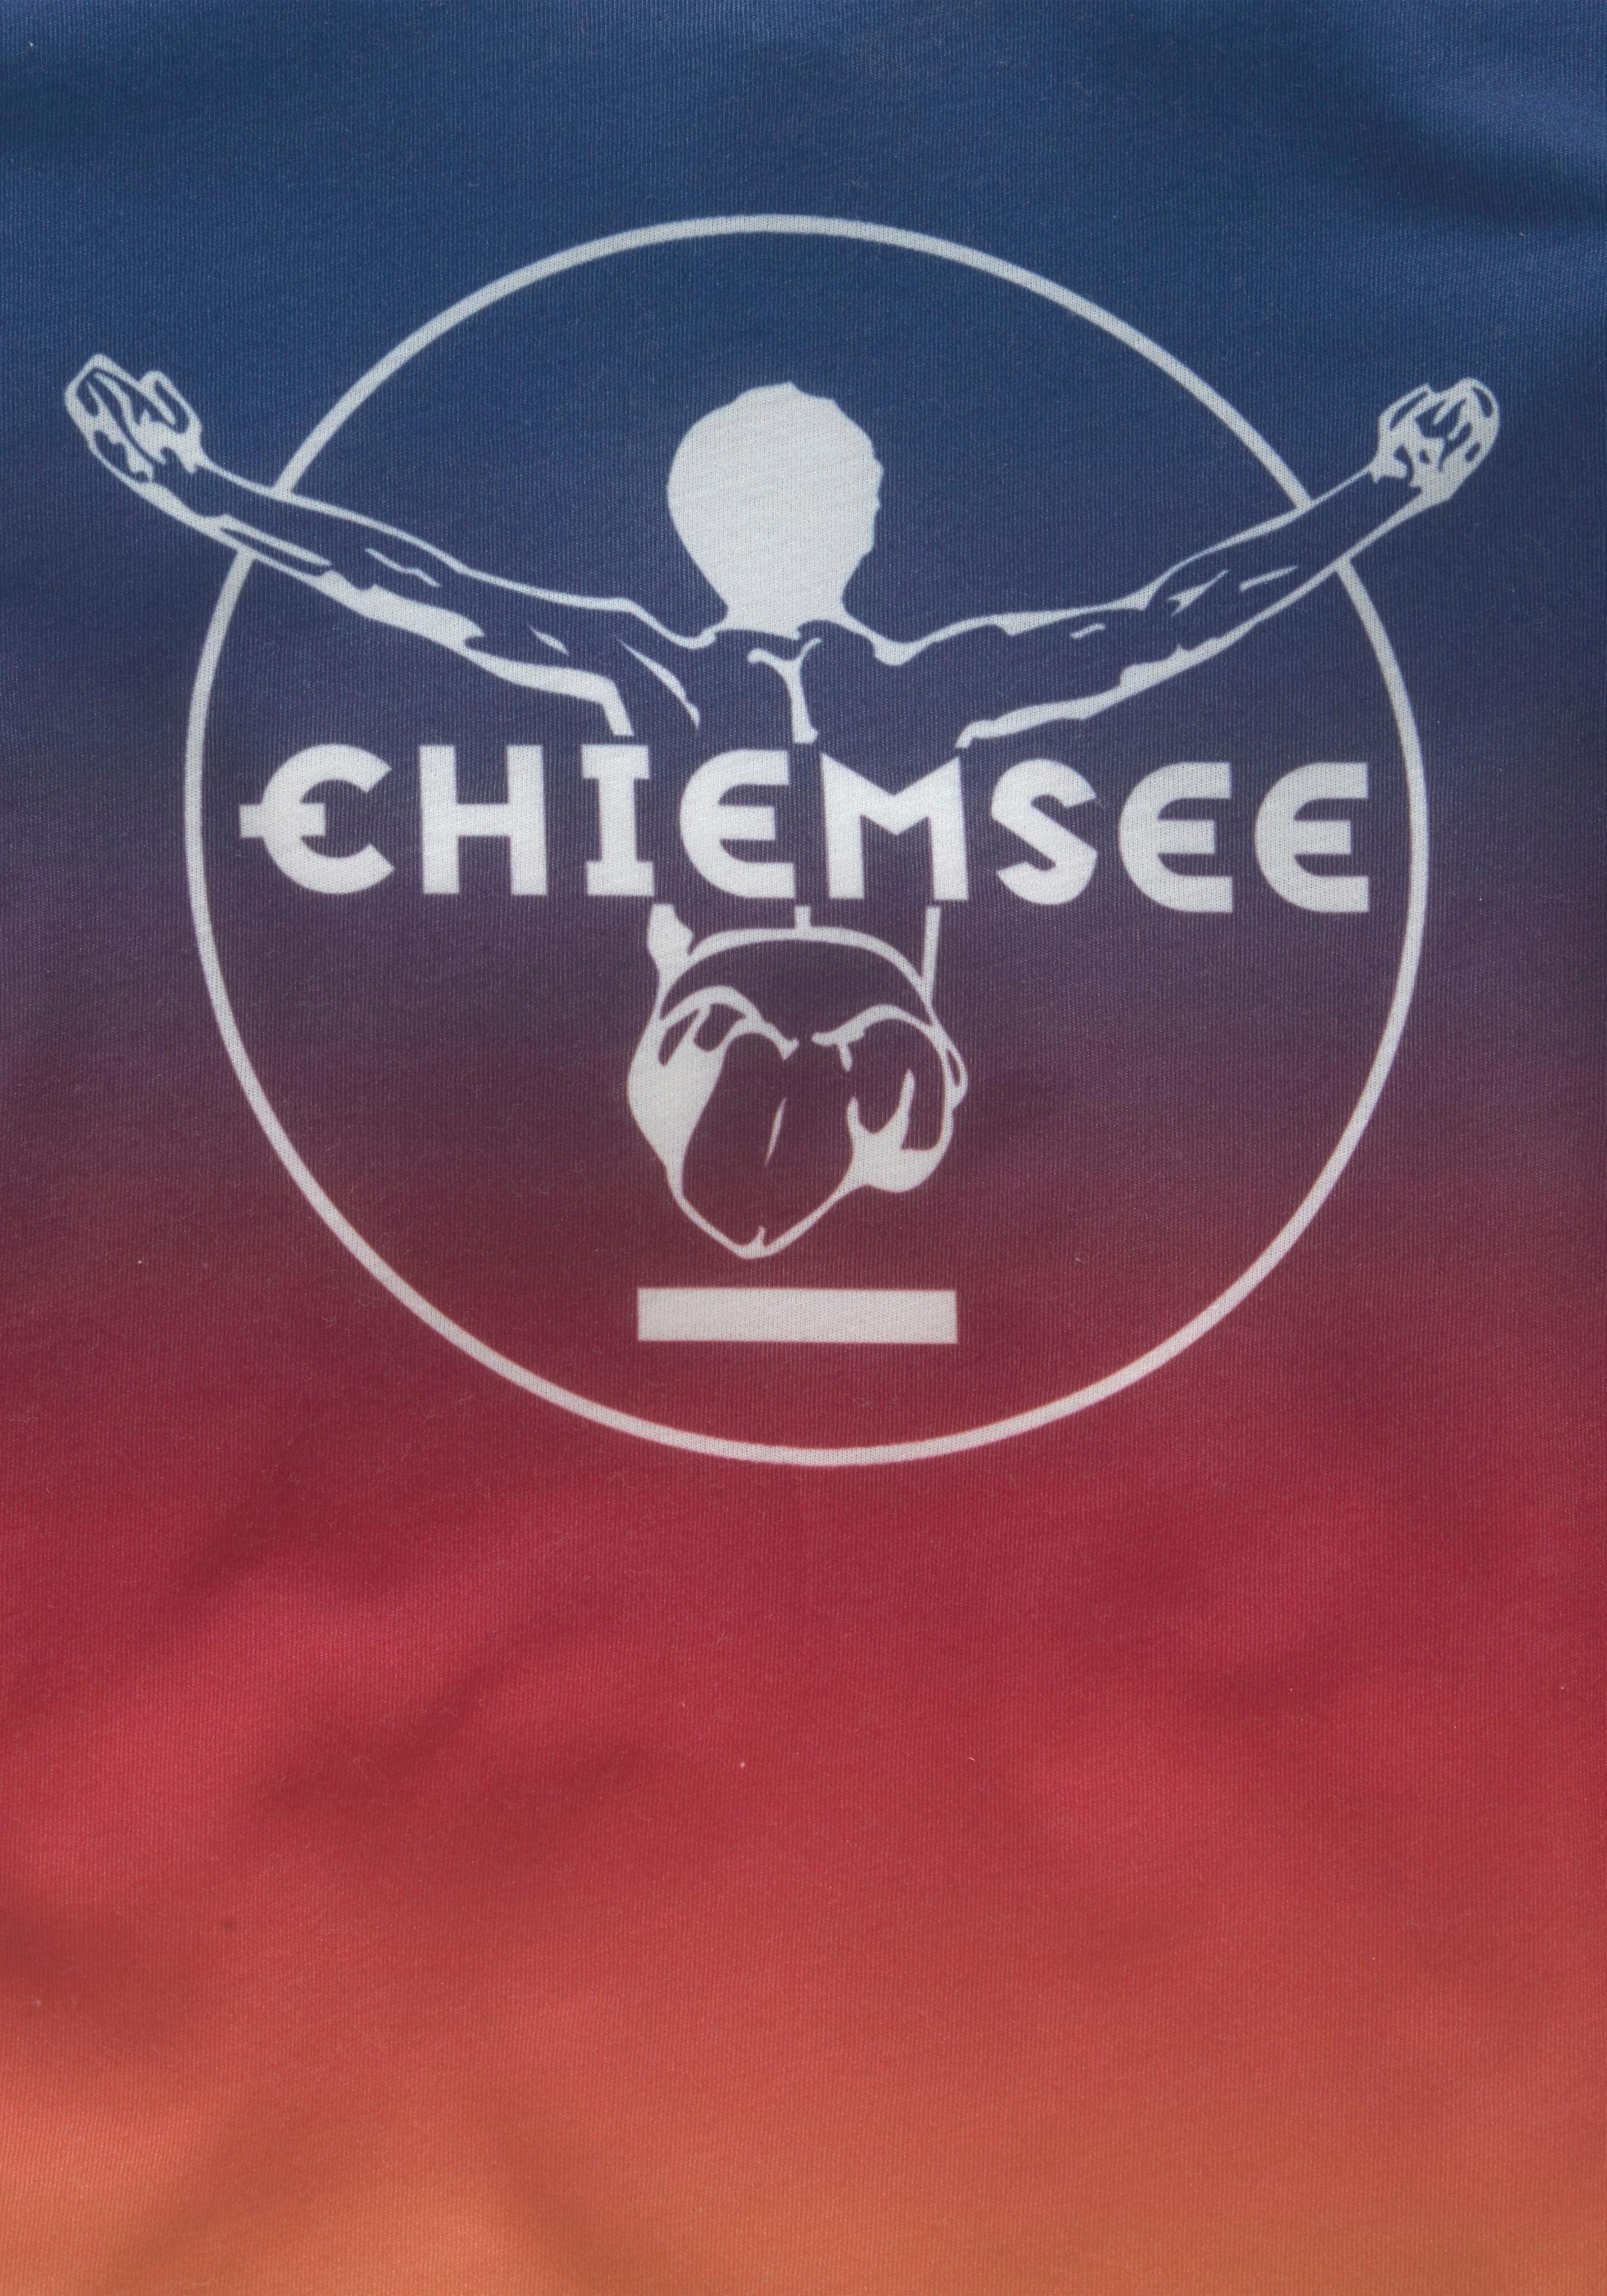 Chiemsee T-Shirt, Druck vorn bei Farbverlauf im mit